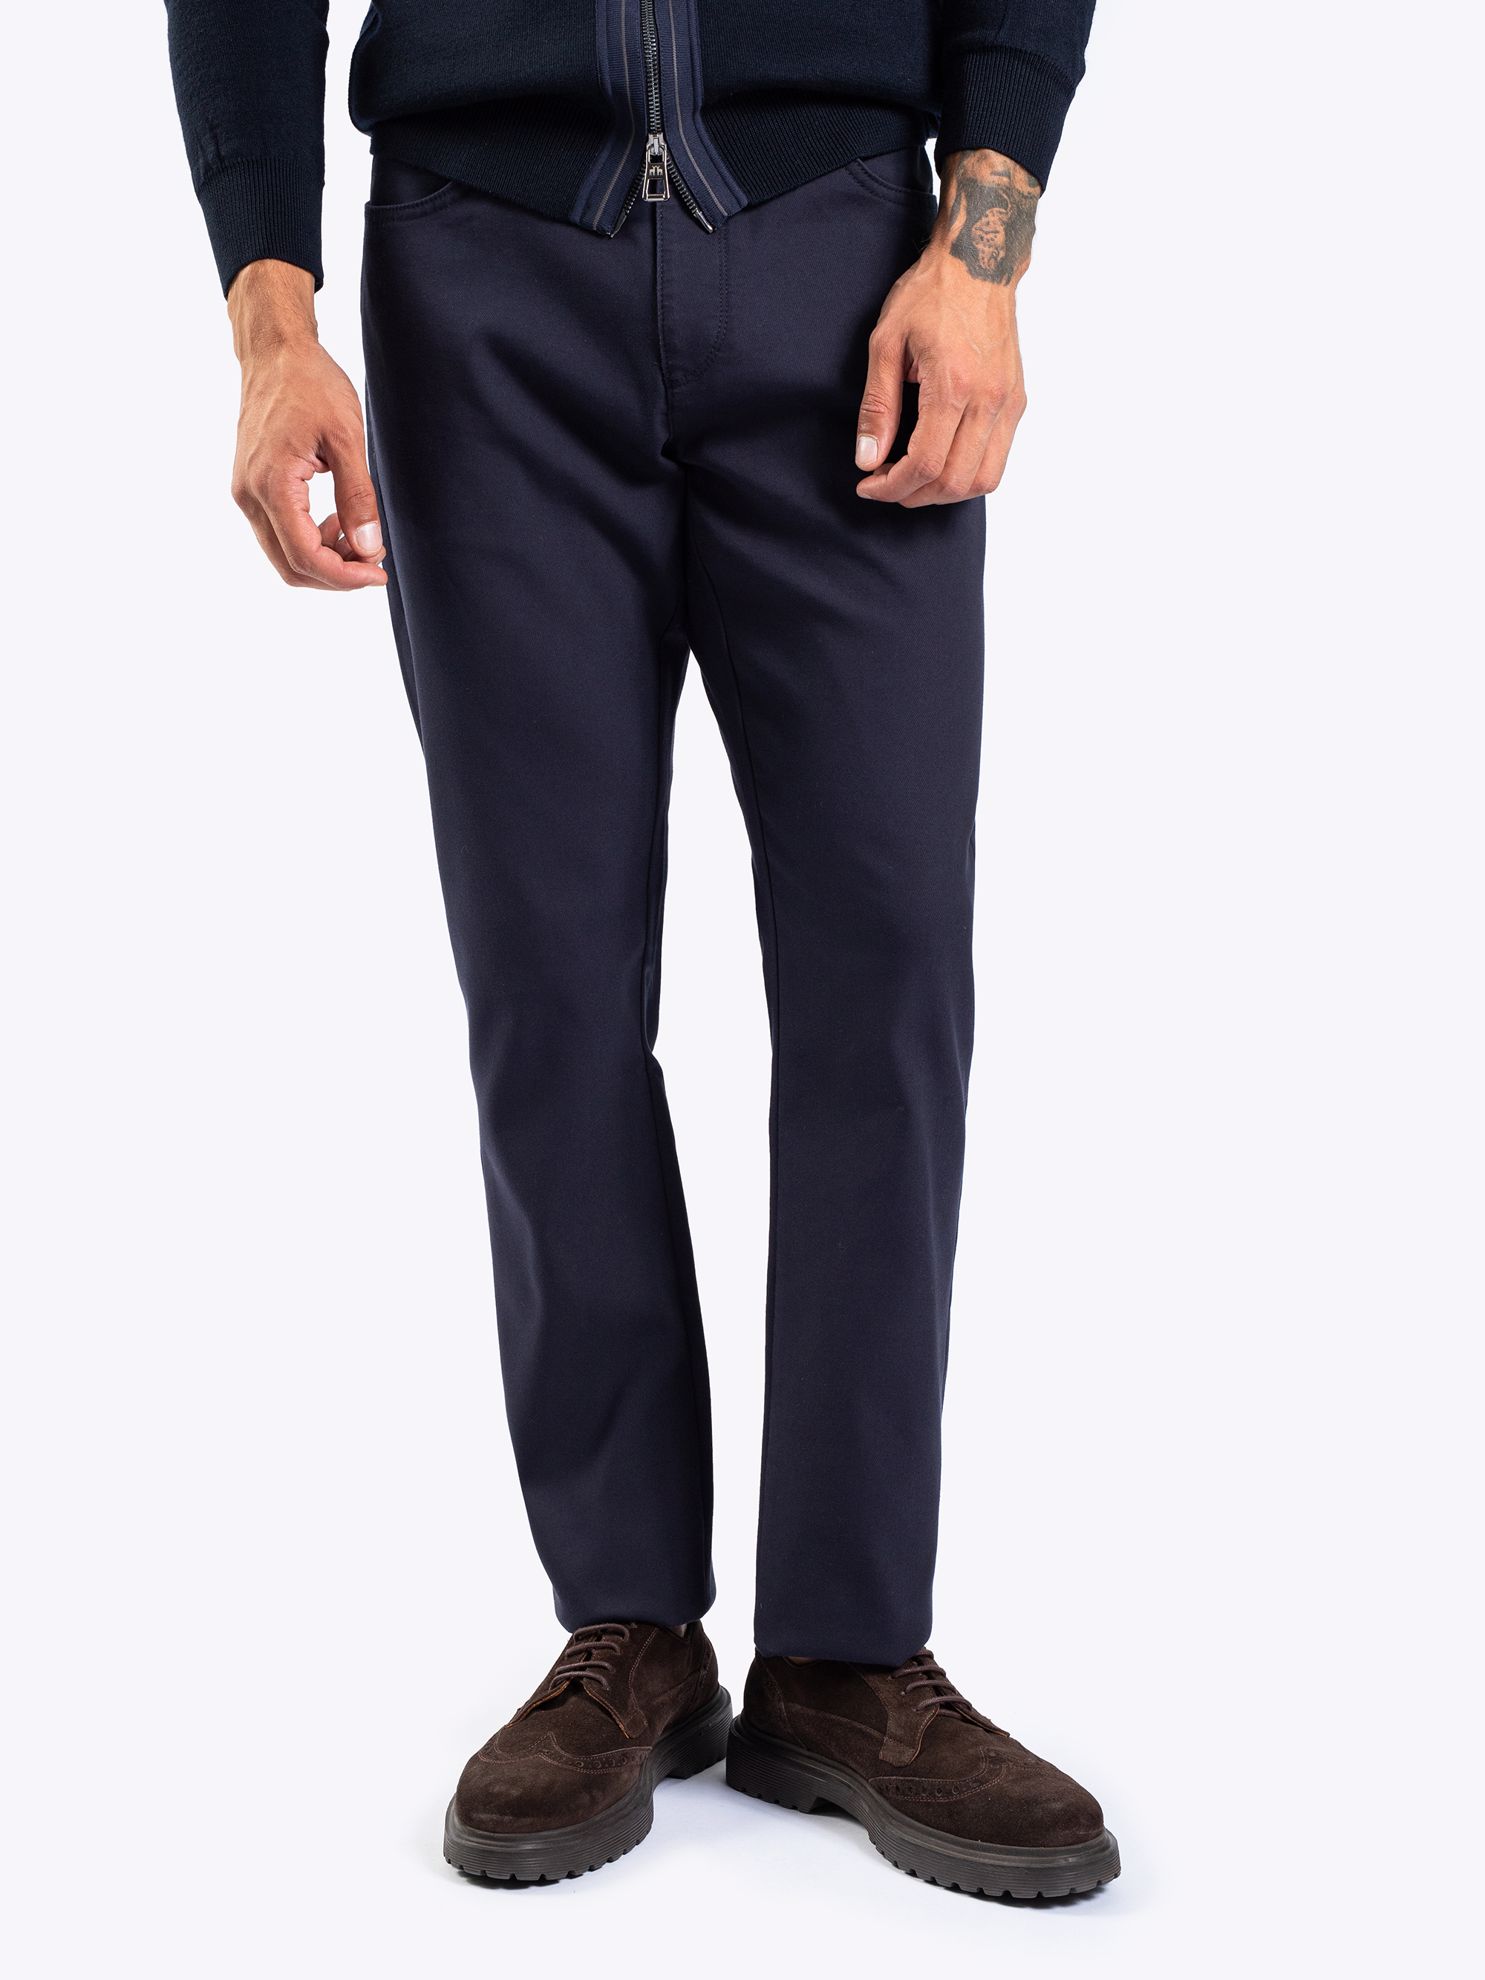 Karaca Erkek 6 Drop Pantolon-Lacivert. ürün görseli